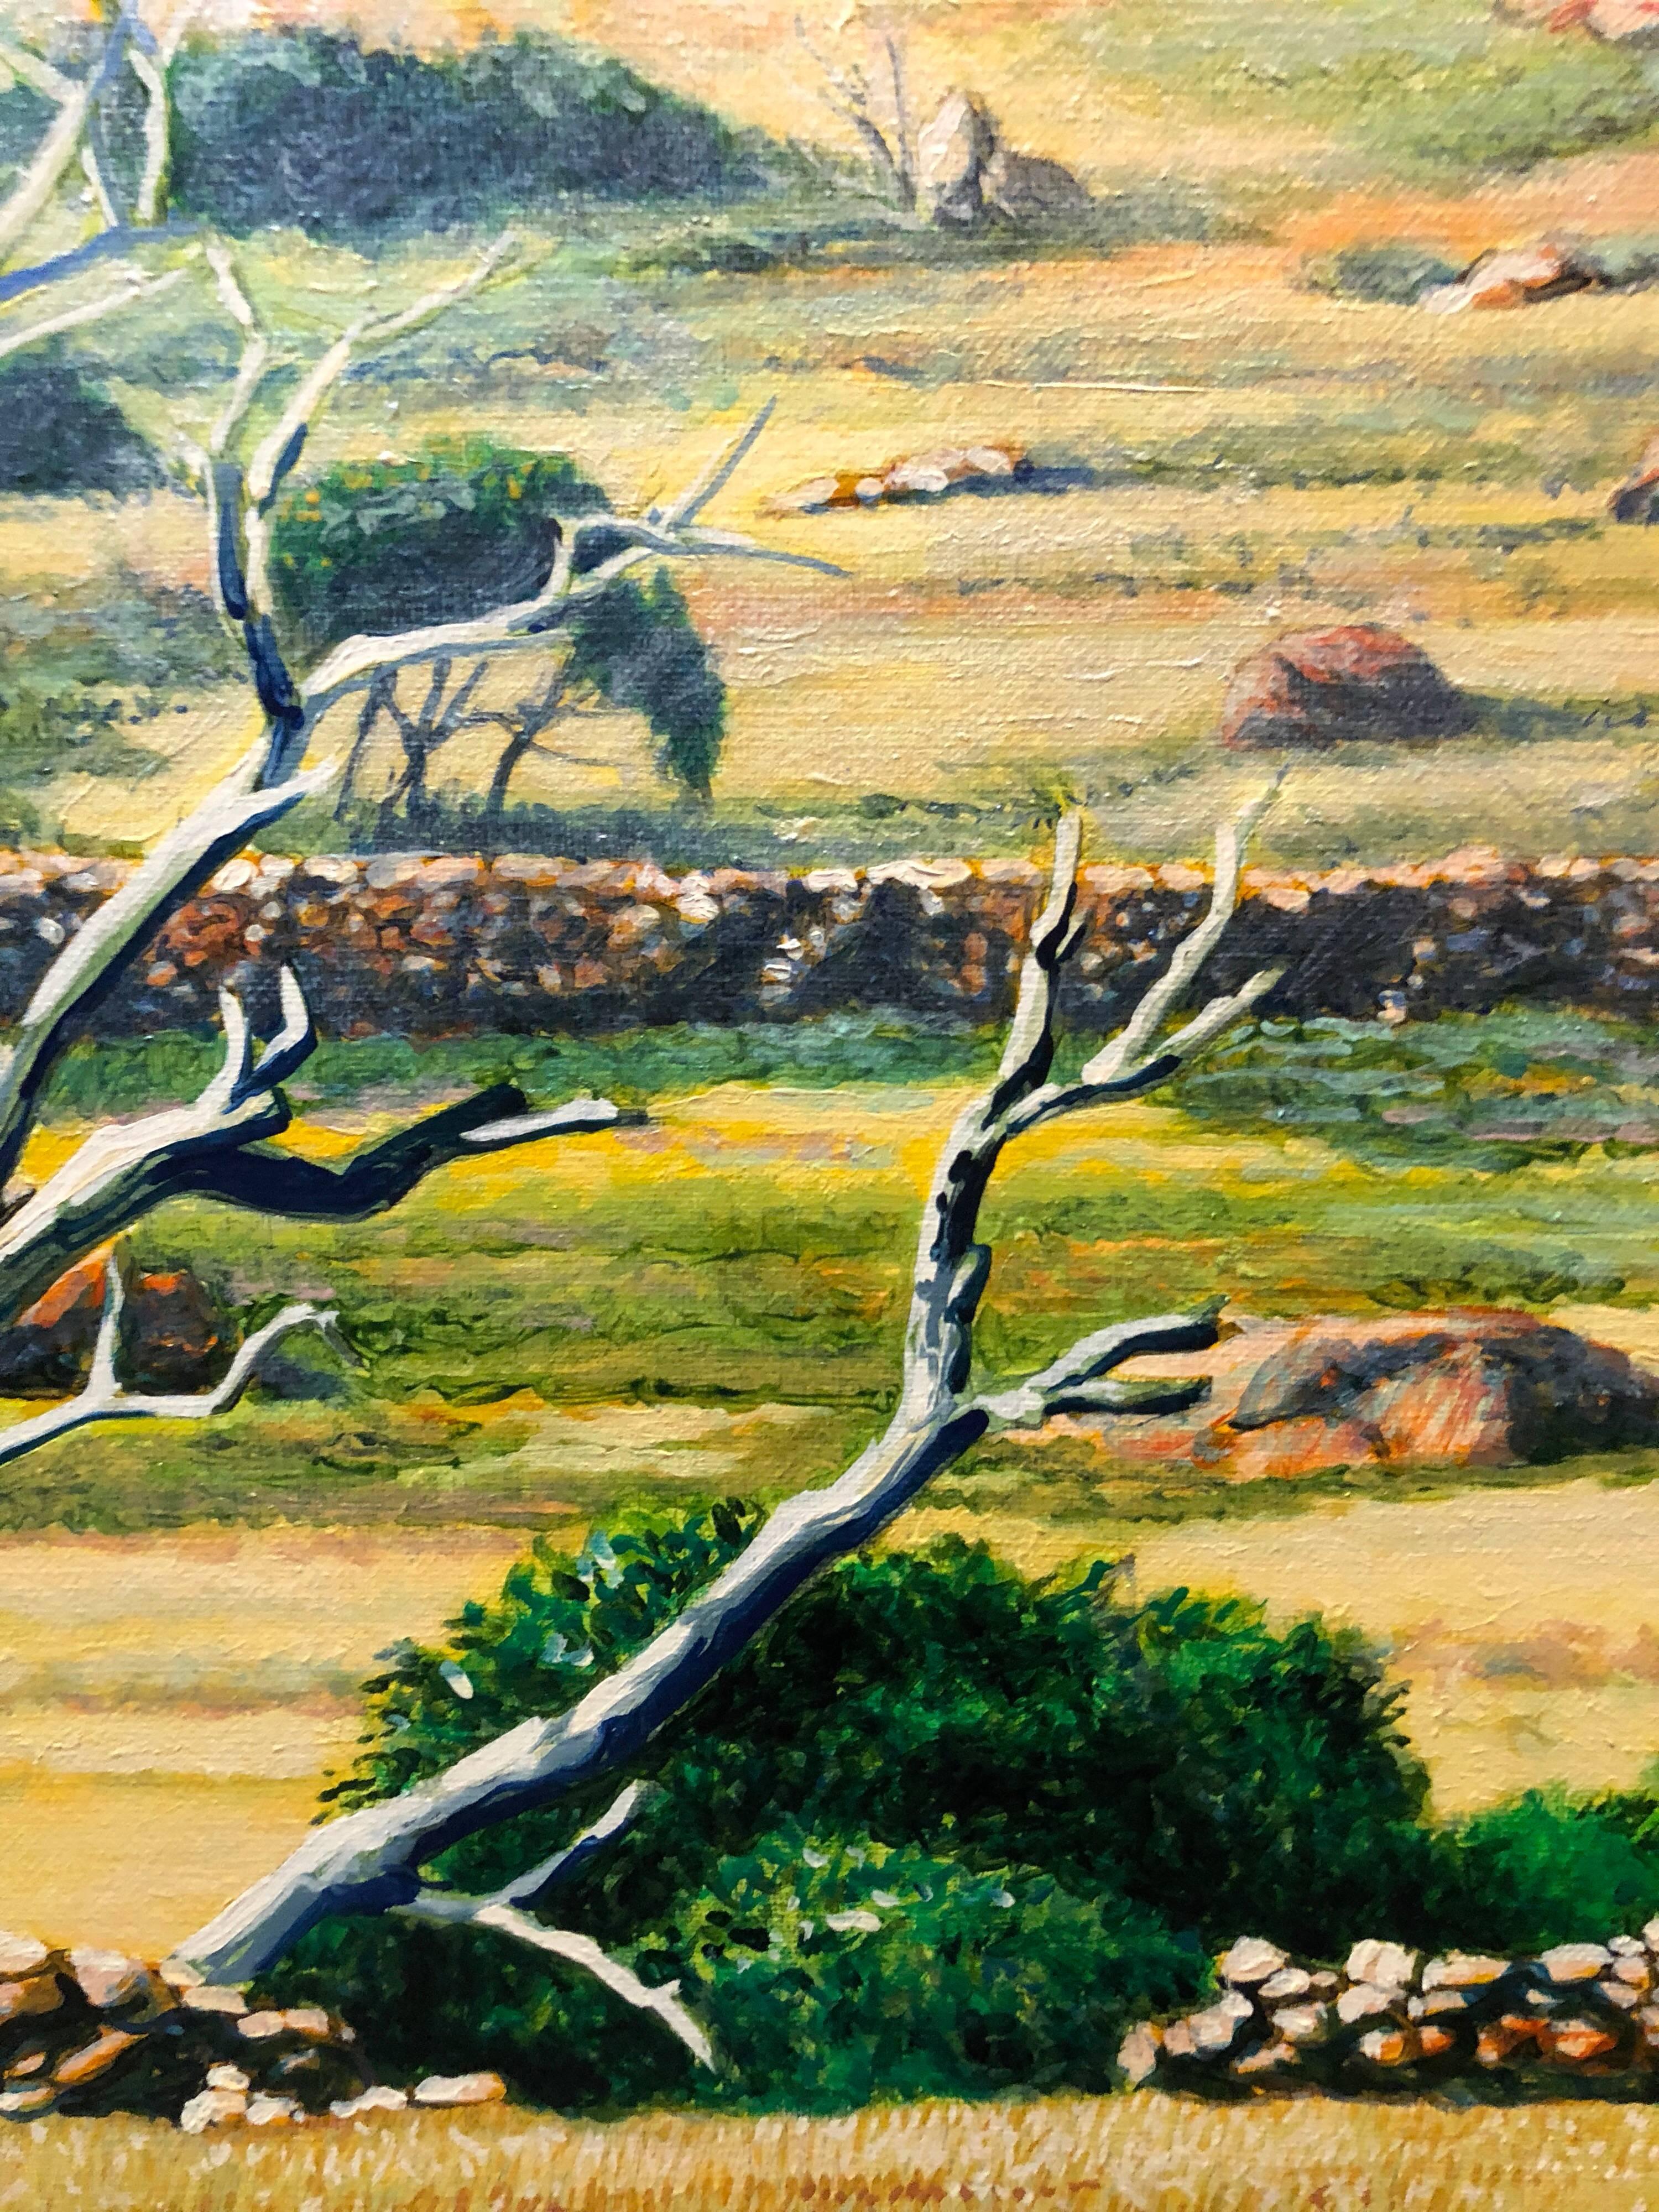 ST BARTH Paysage réaliste et vivant avec rochers et arbres - Contemporain Painting par Fabio Aguzzi